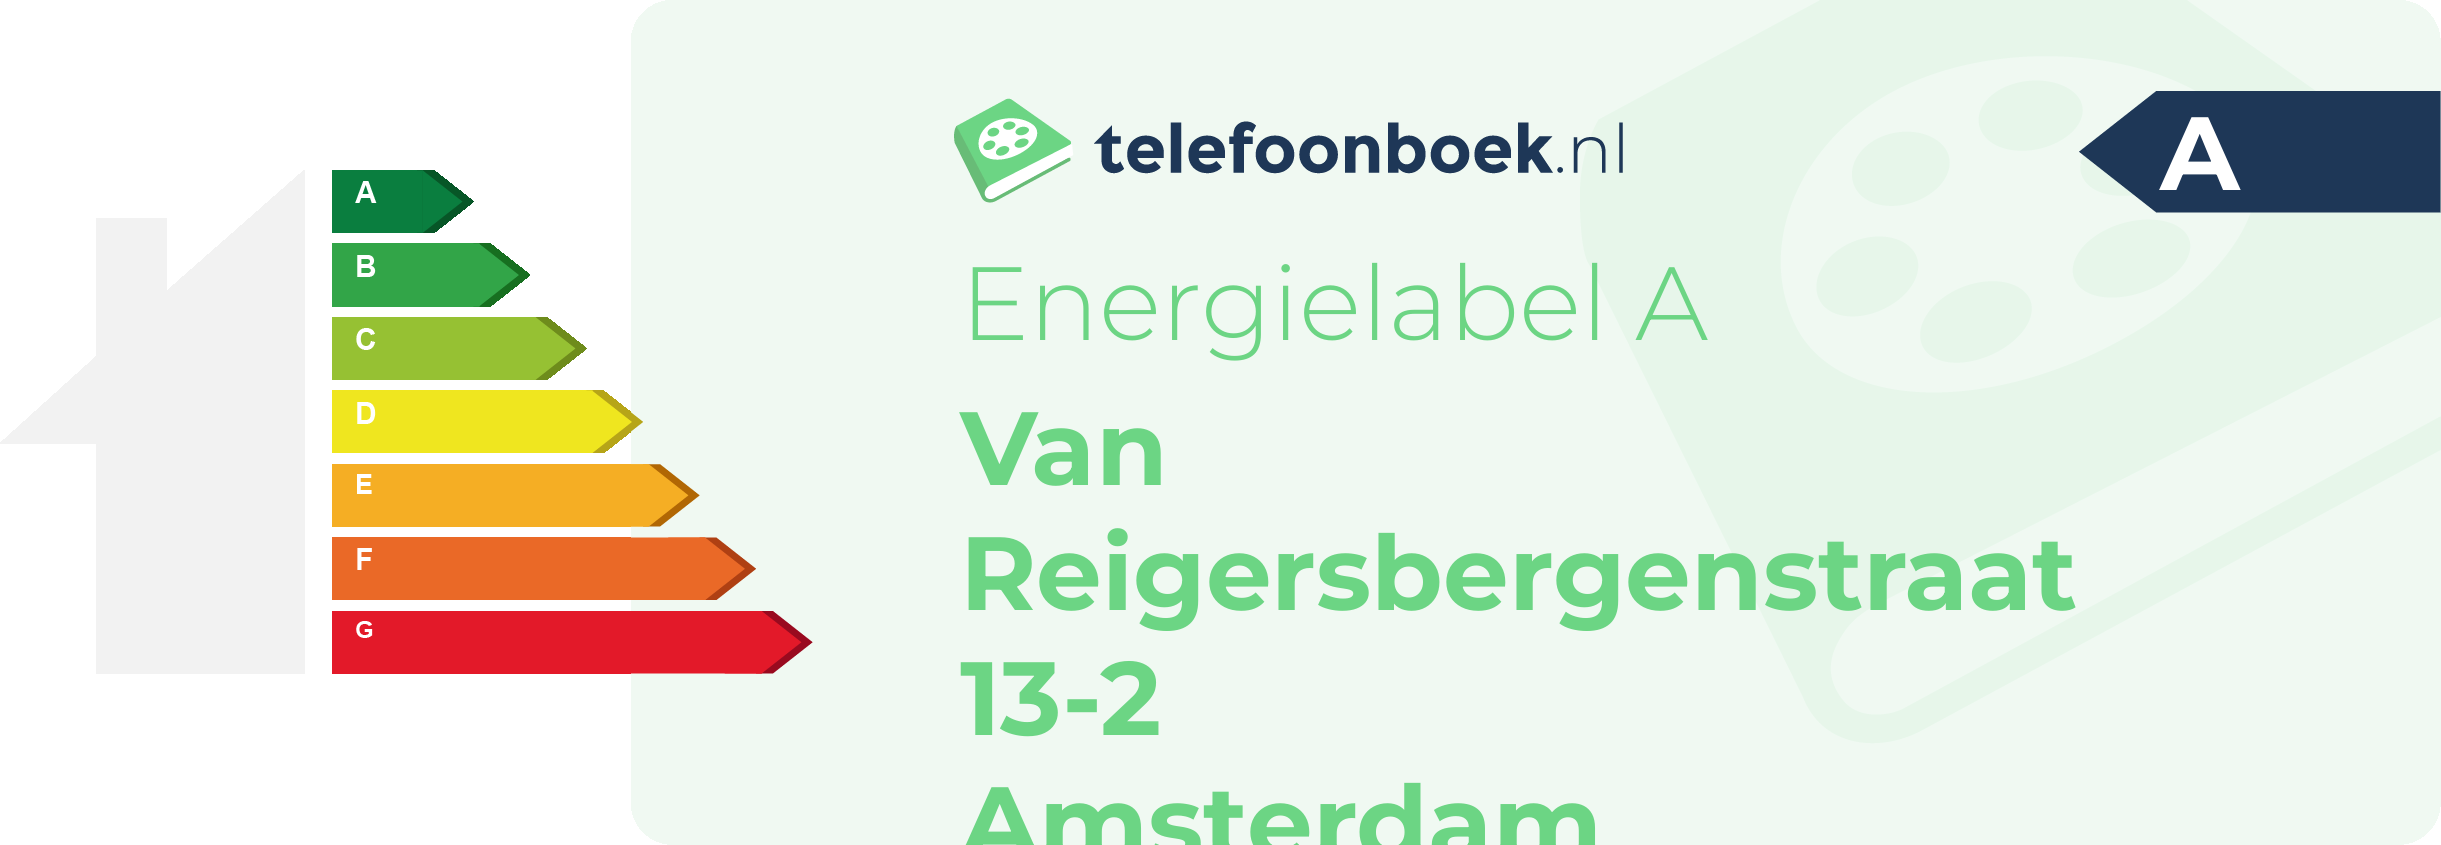 Energielabel Van Reigersbergenstraat 13-2 Amsterdam